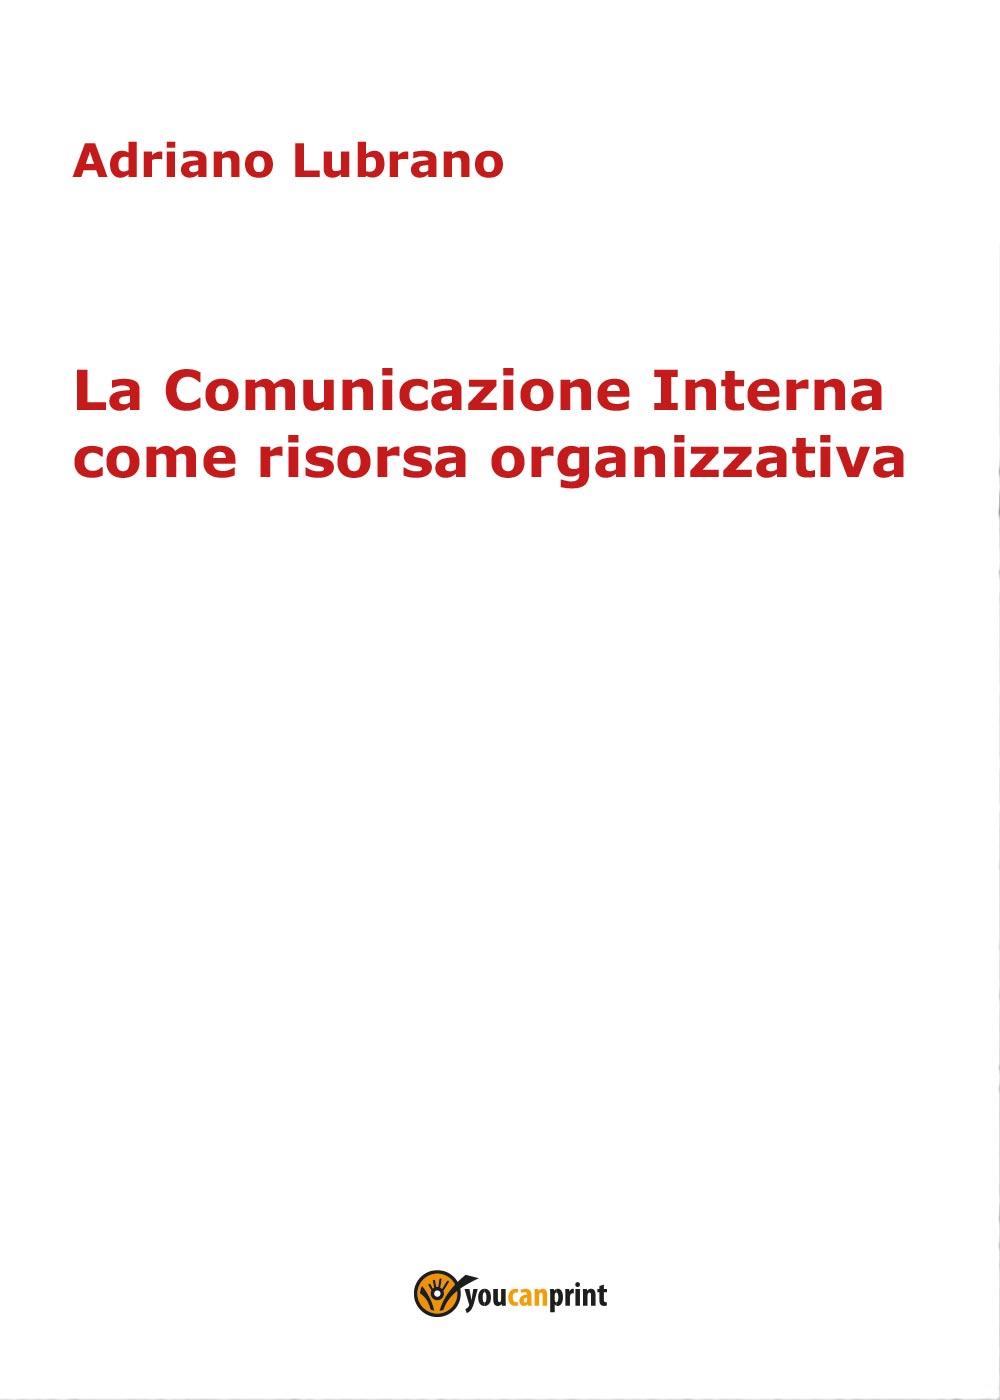 La Comunicazione Interna come risorsa organizzativa